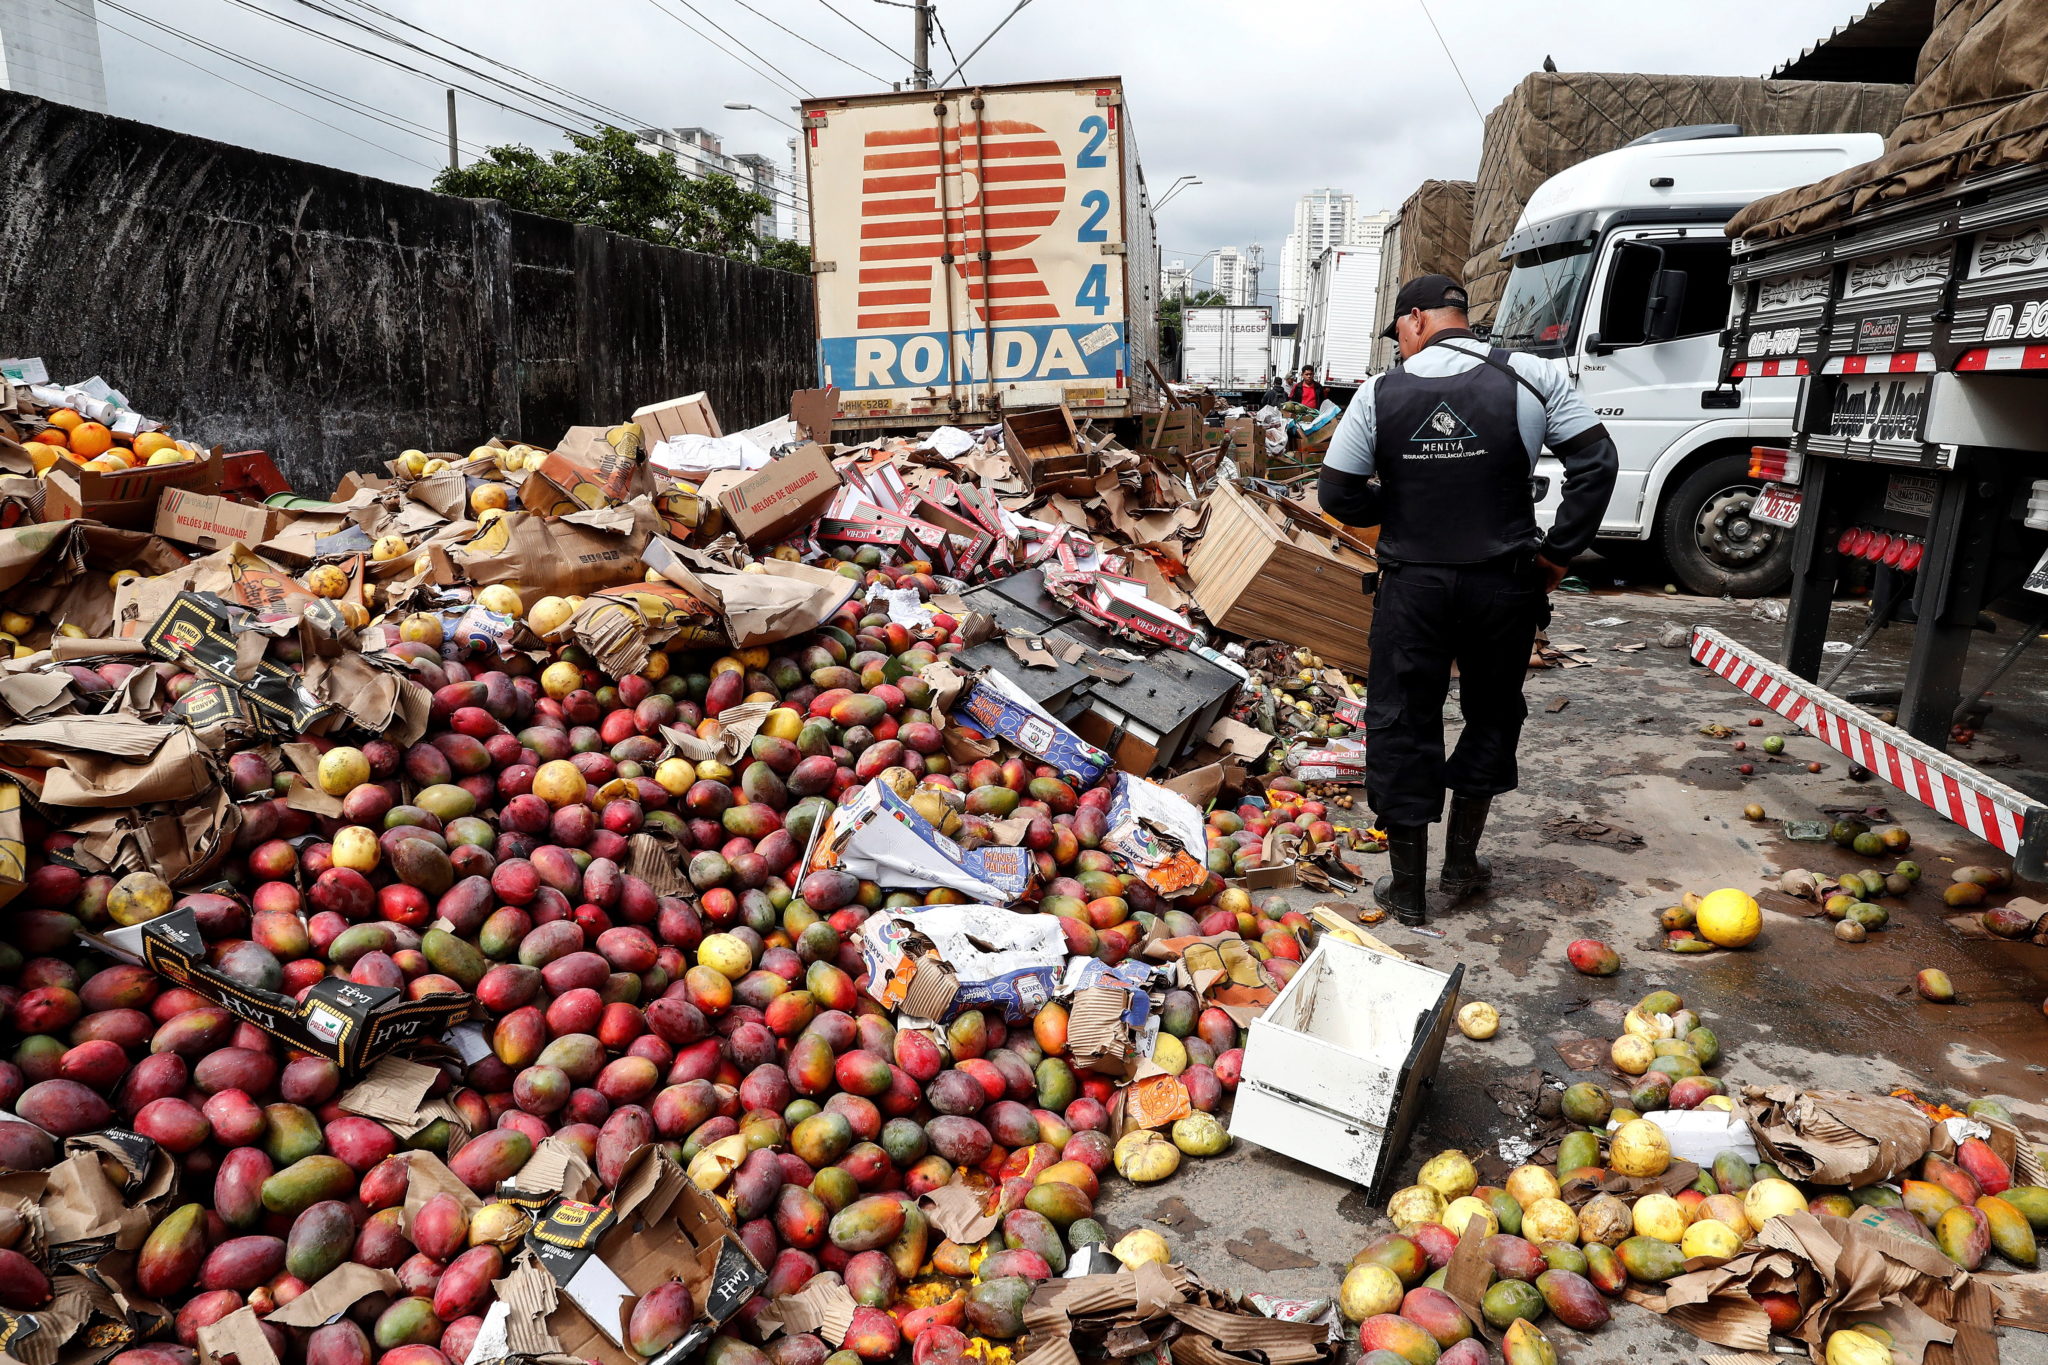 Brazylia: wyrzucone owoce, warzywa i rośliny strączkowe, pełne błota po ulewnych deszczy w Sao Paulo, fot. EPA/Sebastiao Moreira